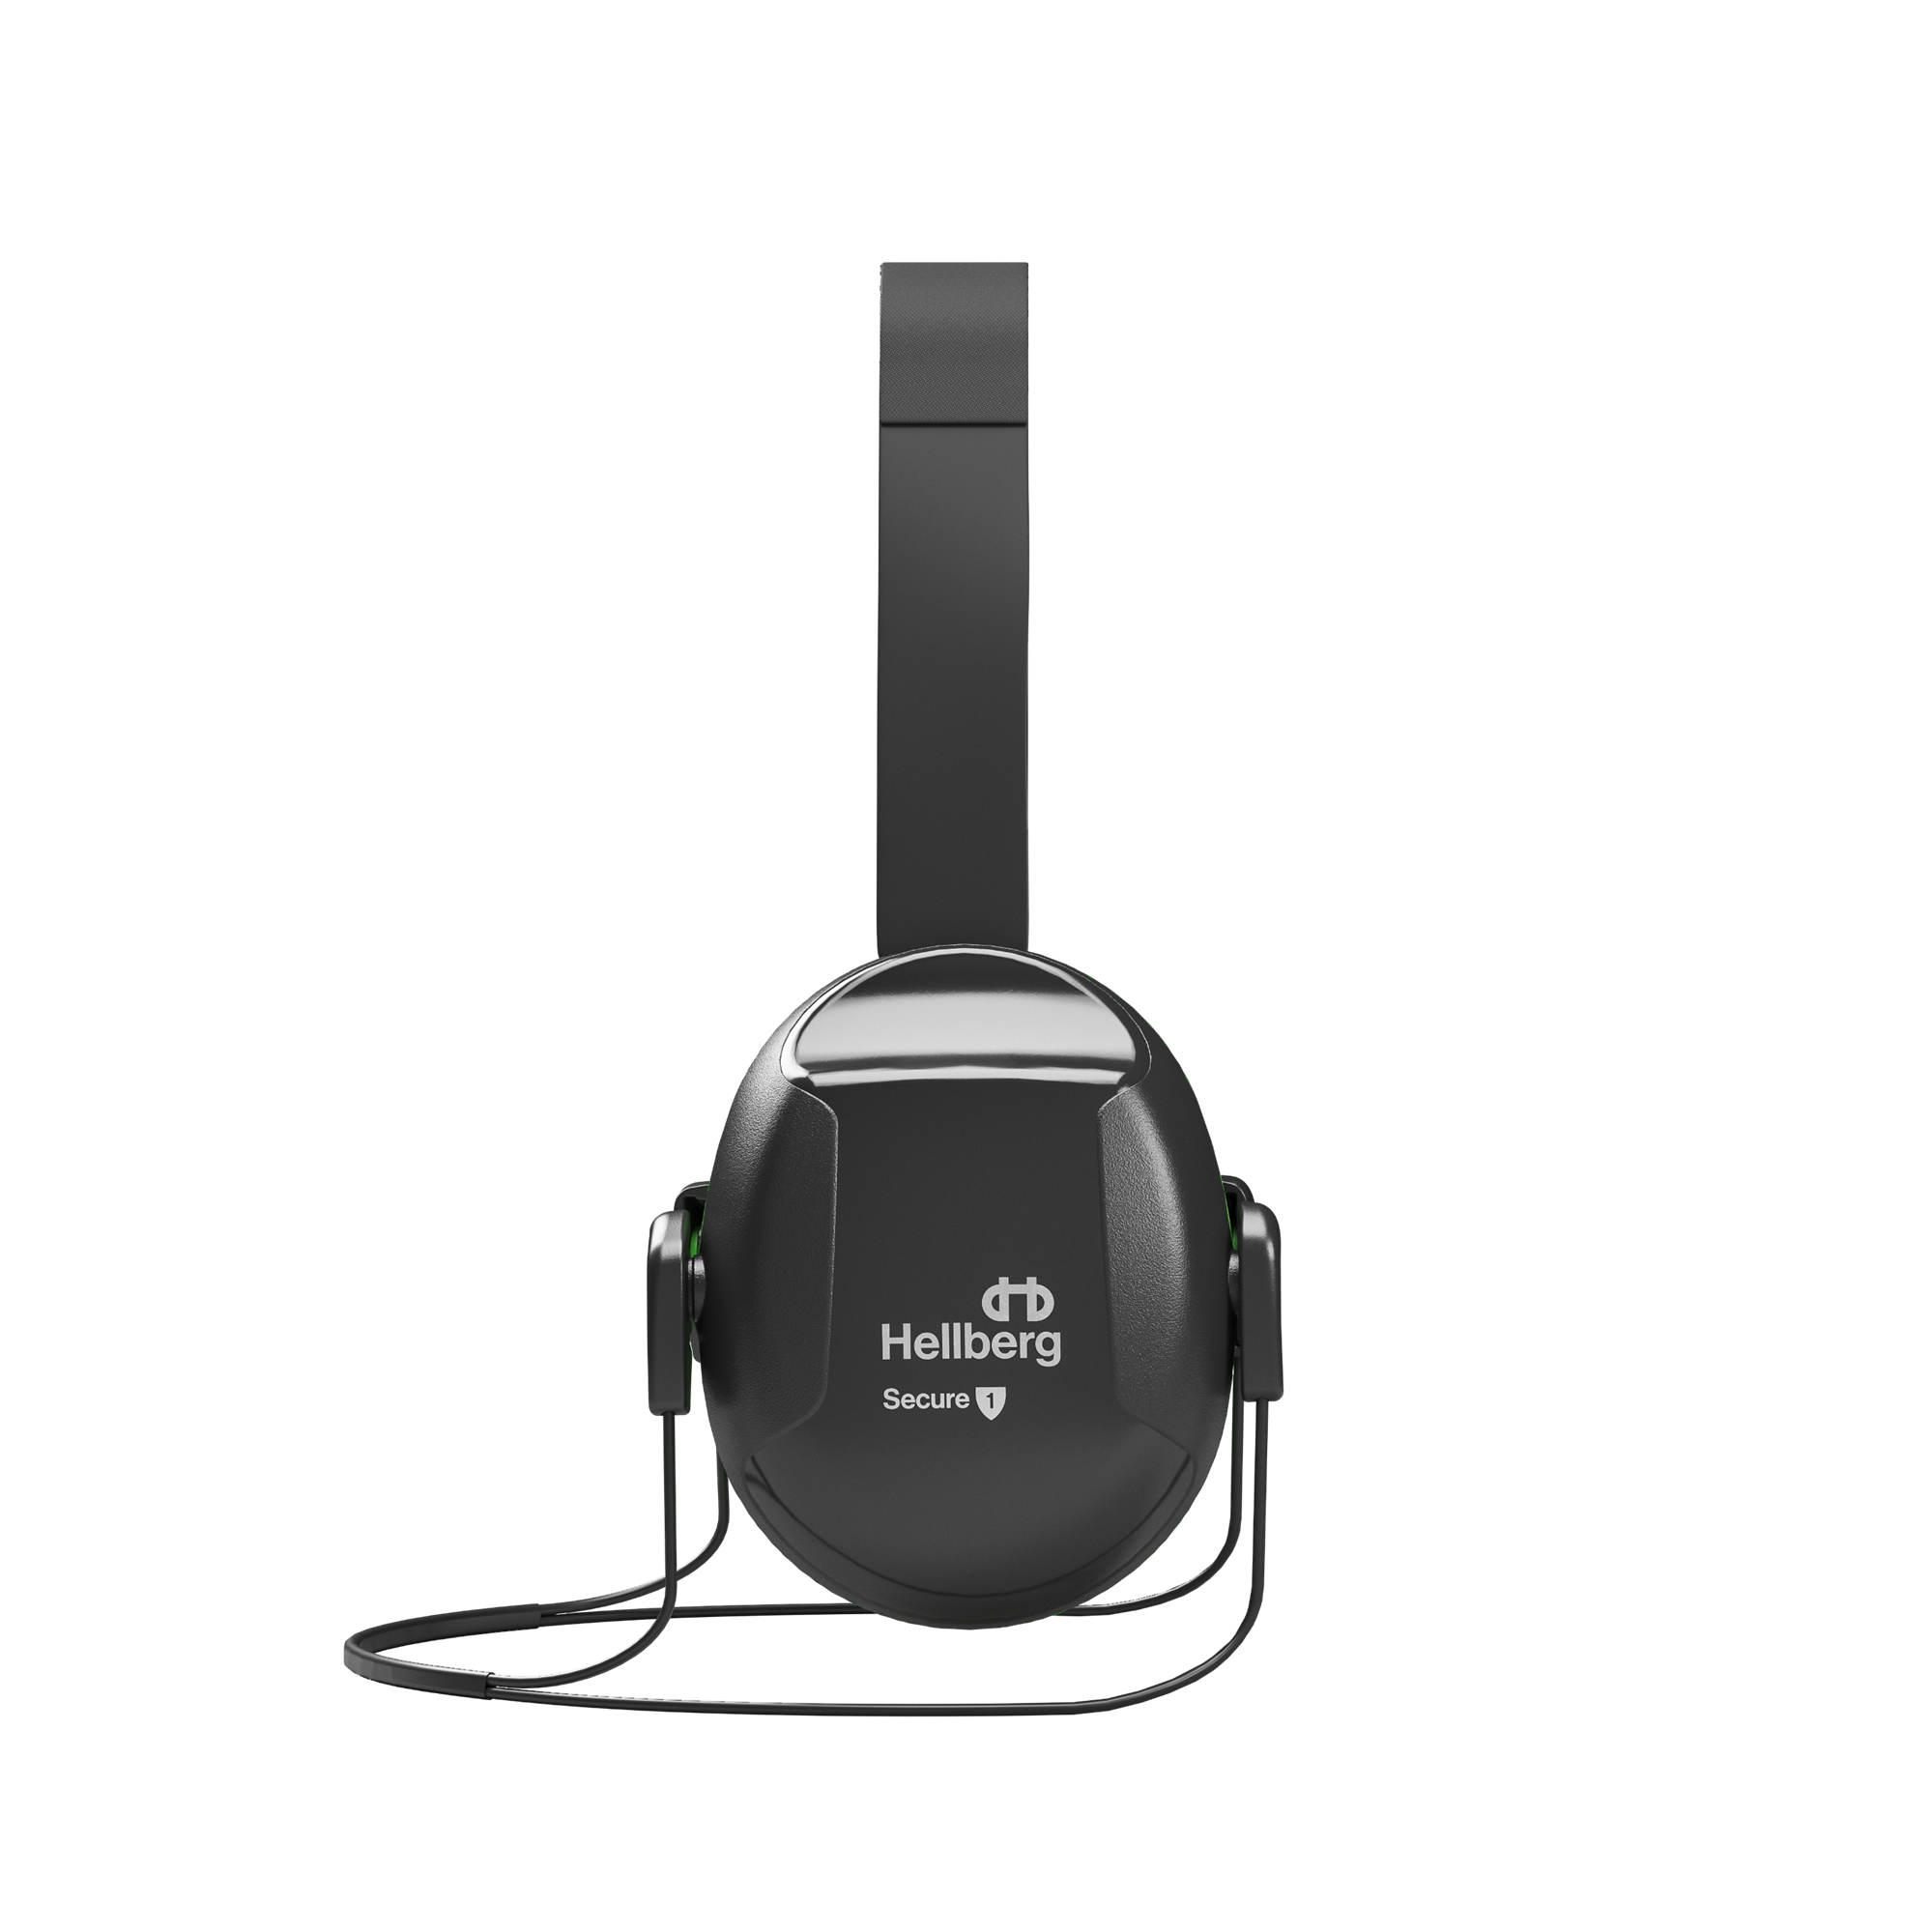 43001 001 Hellberg Secure 1 Nackenbügel, Gehörschutz, Kapselgehörschutz, Schutzstufe 1, 75 - 90 dB